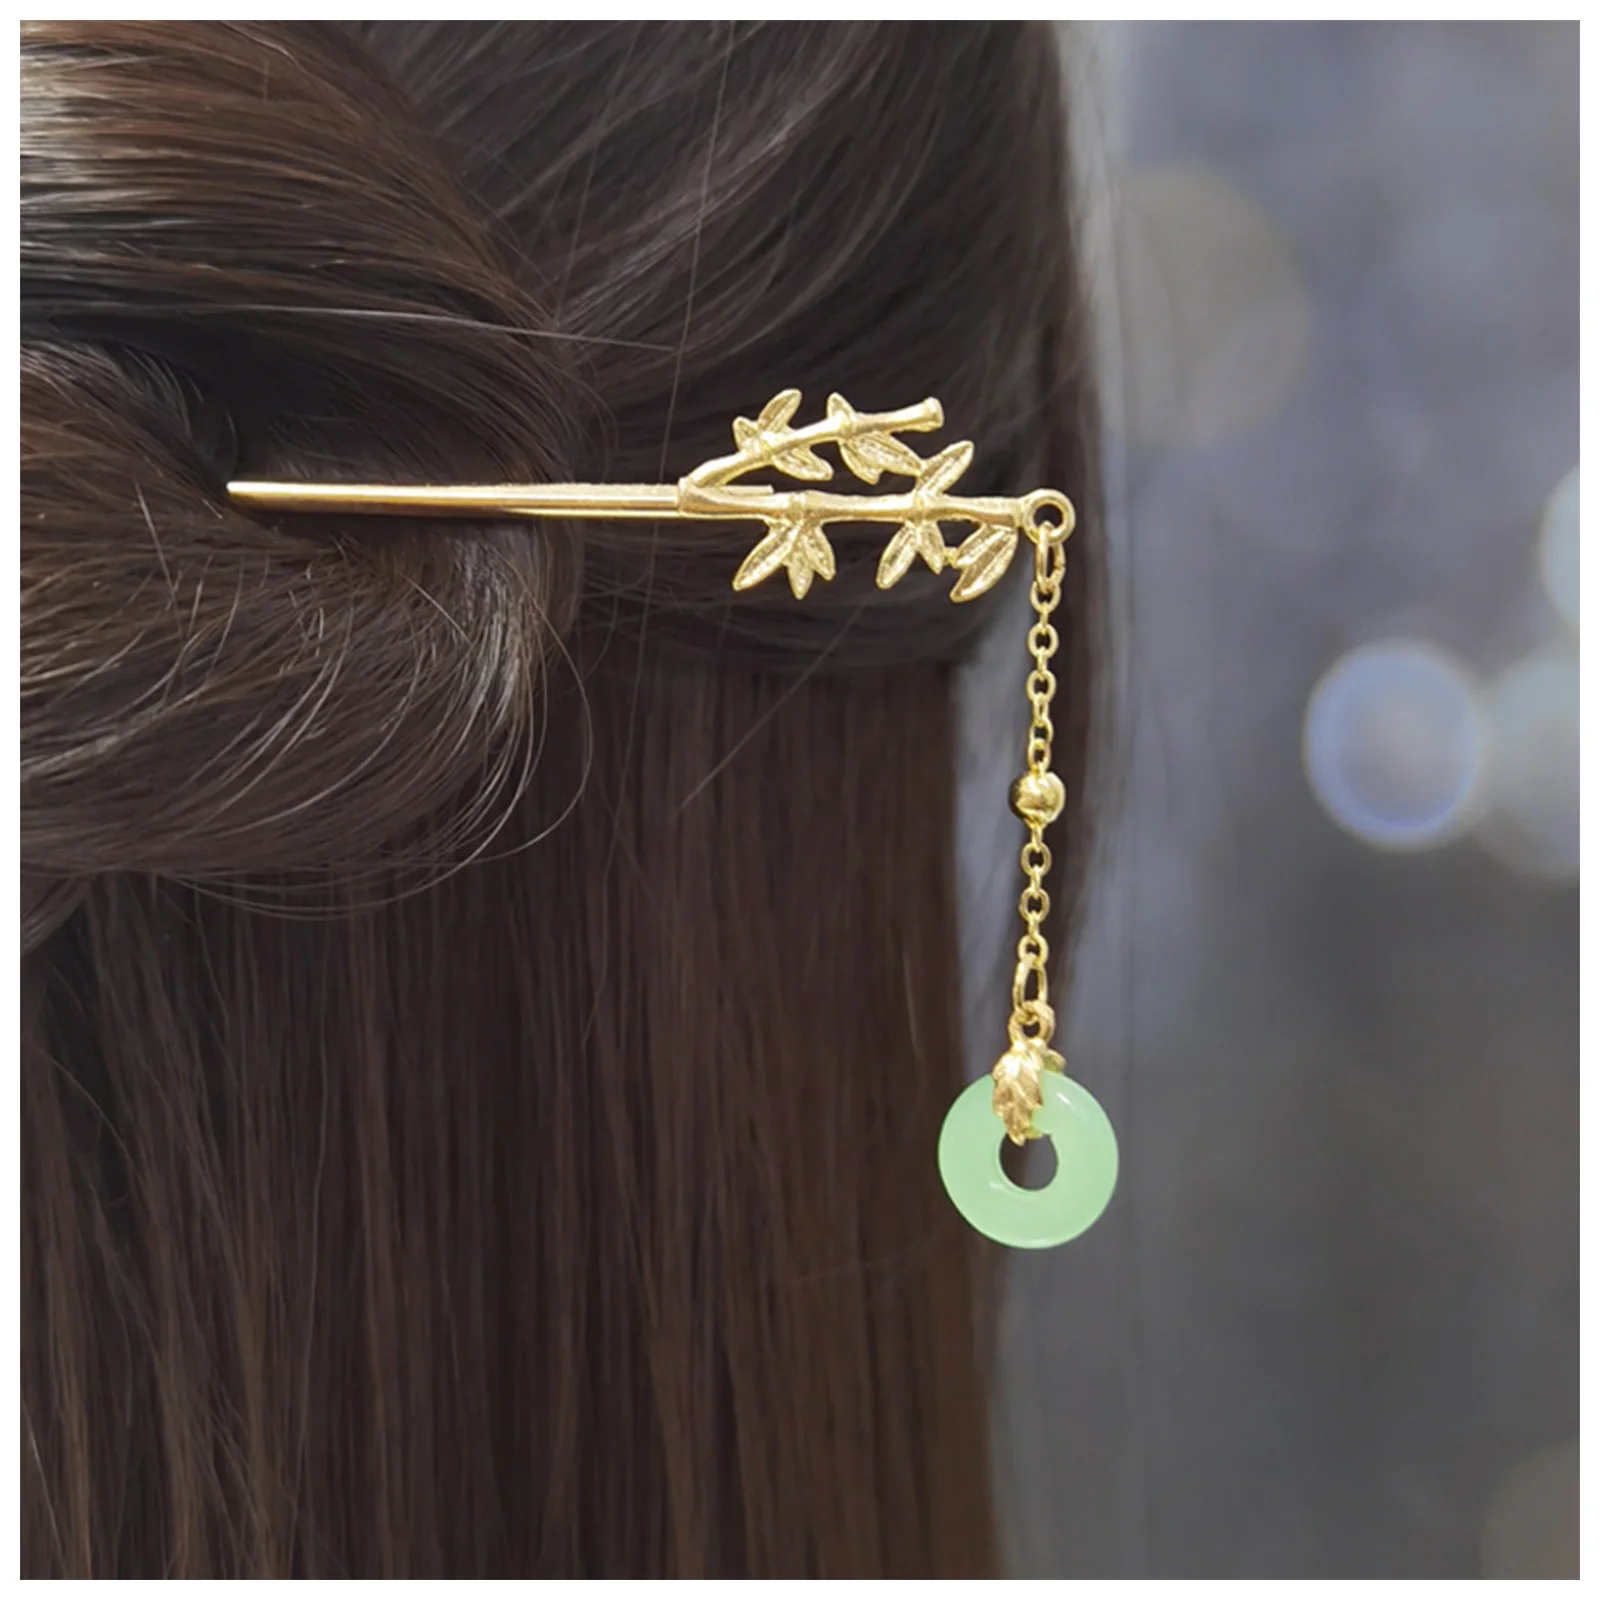 Žena Vintage Vlasy Hůlky Luxusní Lemovaný Květ Špice Updo Drdolu Kolíky pro Cheongsam Han Oblečení, Čajová konvice Nosit FS99